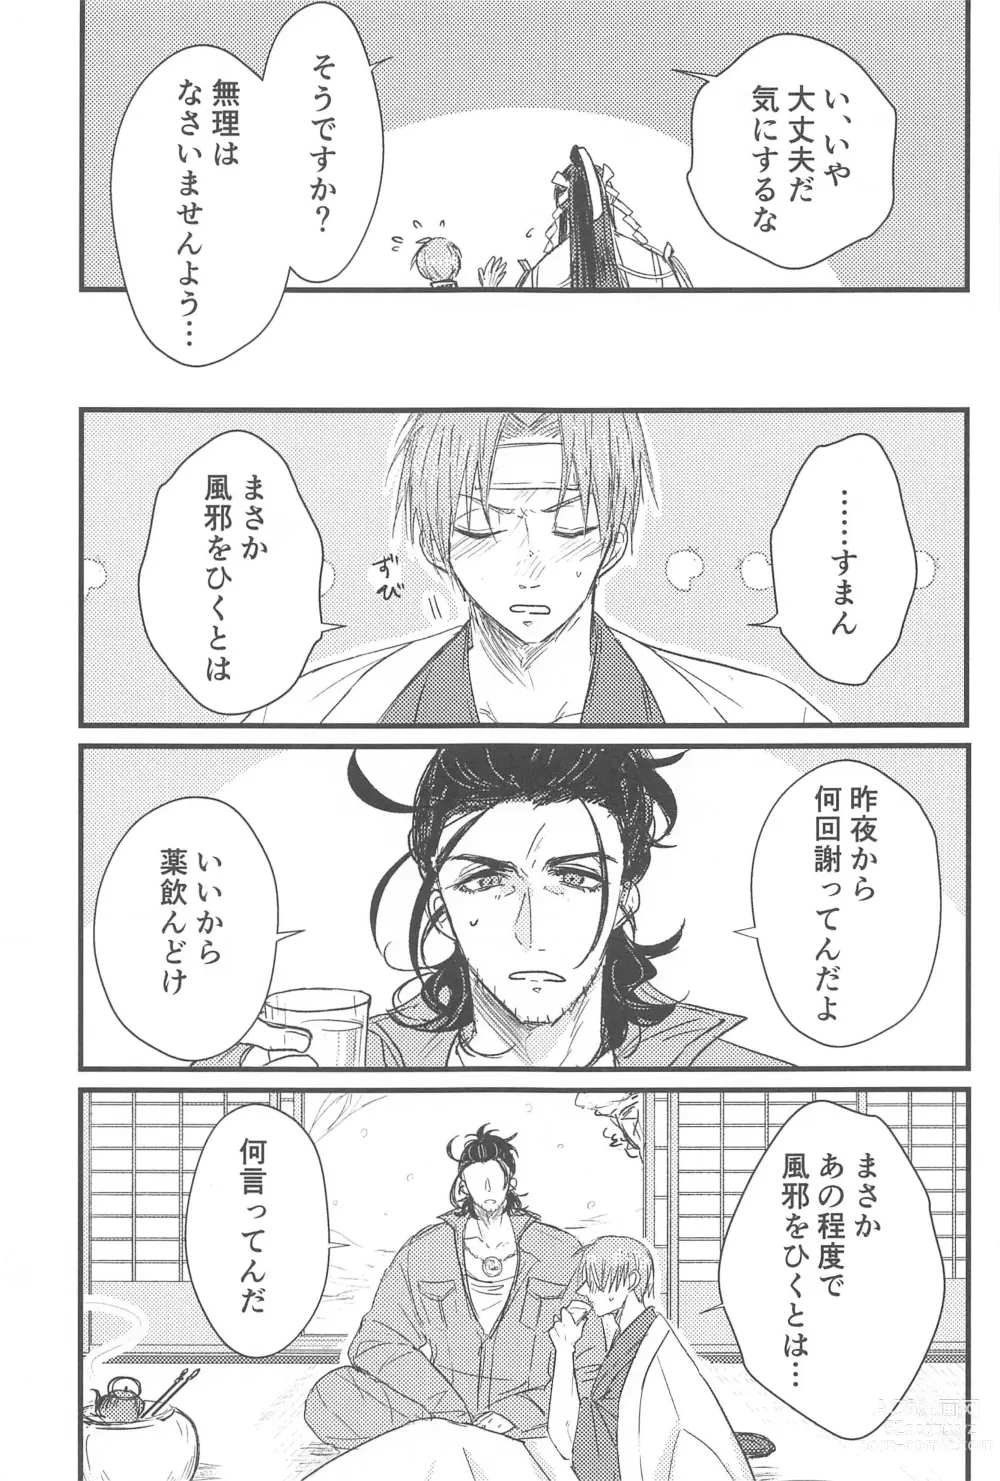 Page 4 of doujinshi Hatsuyo ni Tsugu